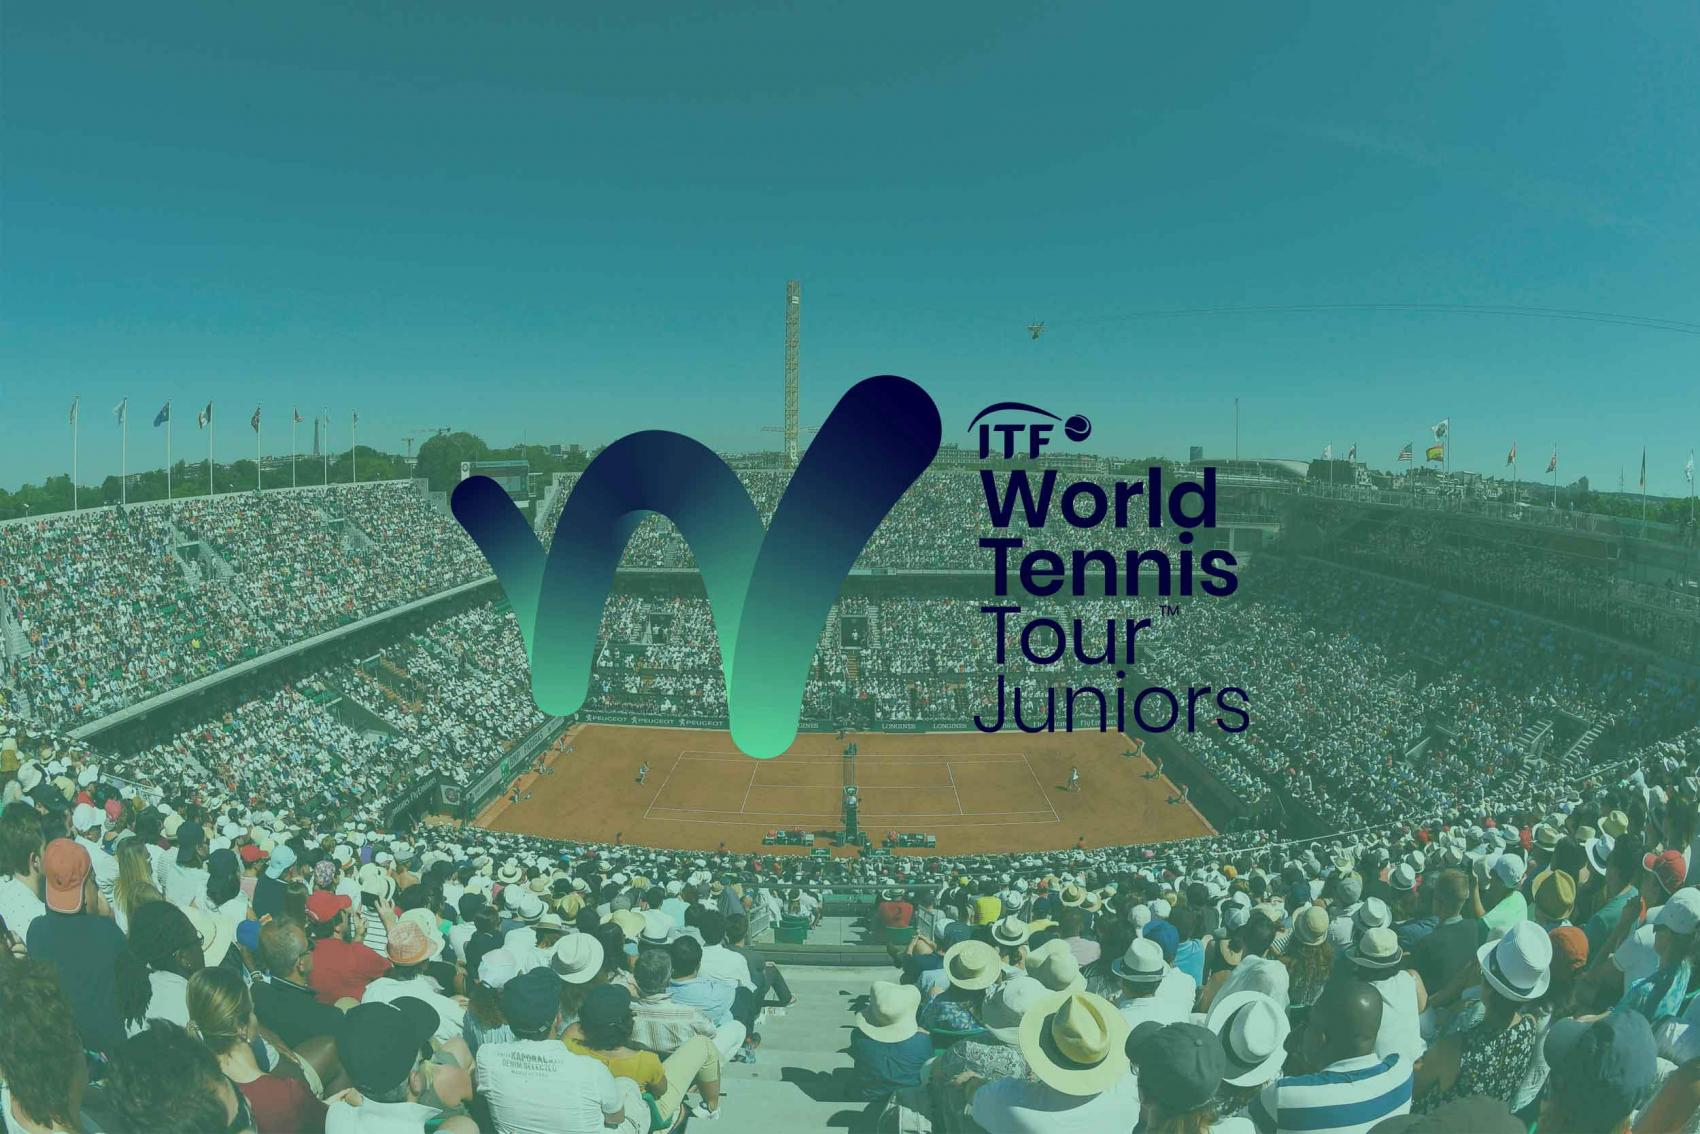 ITF World Tennis Tour Juniors